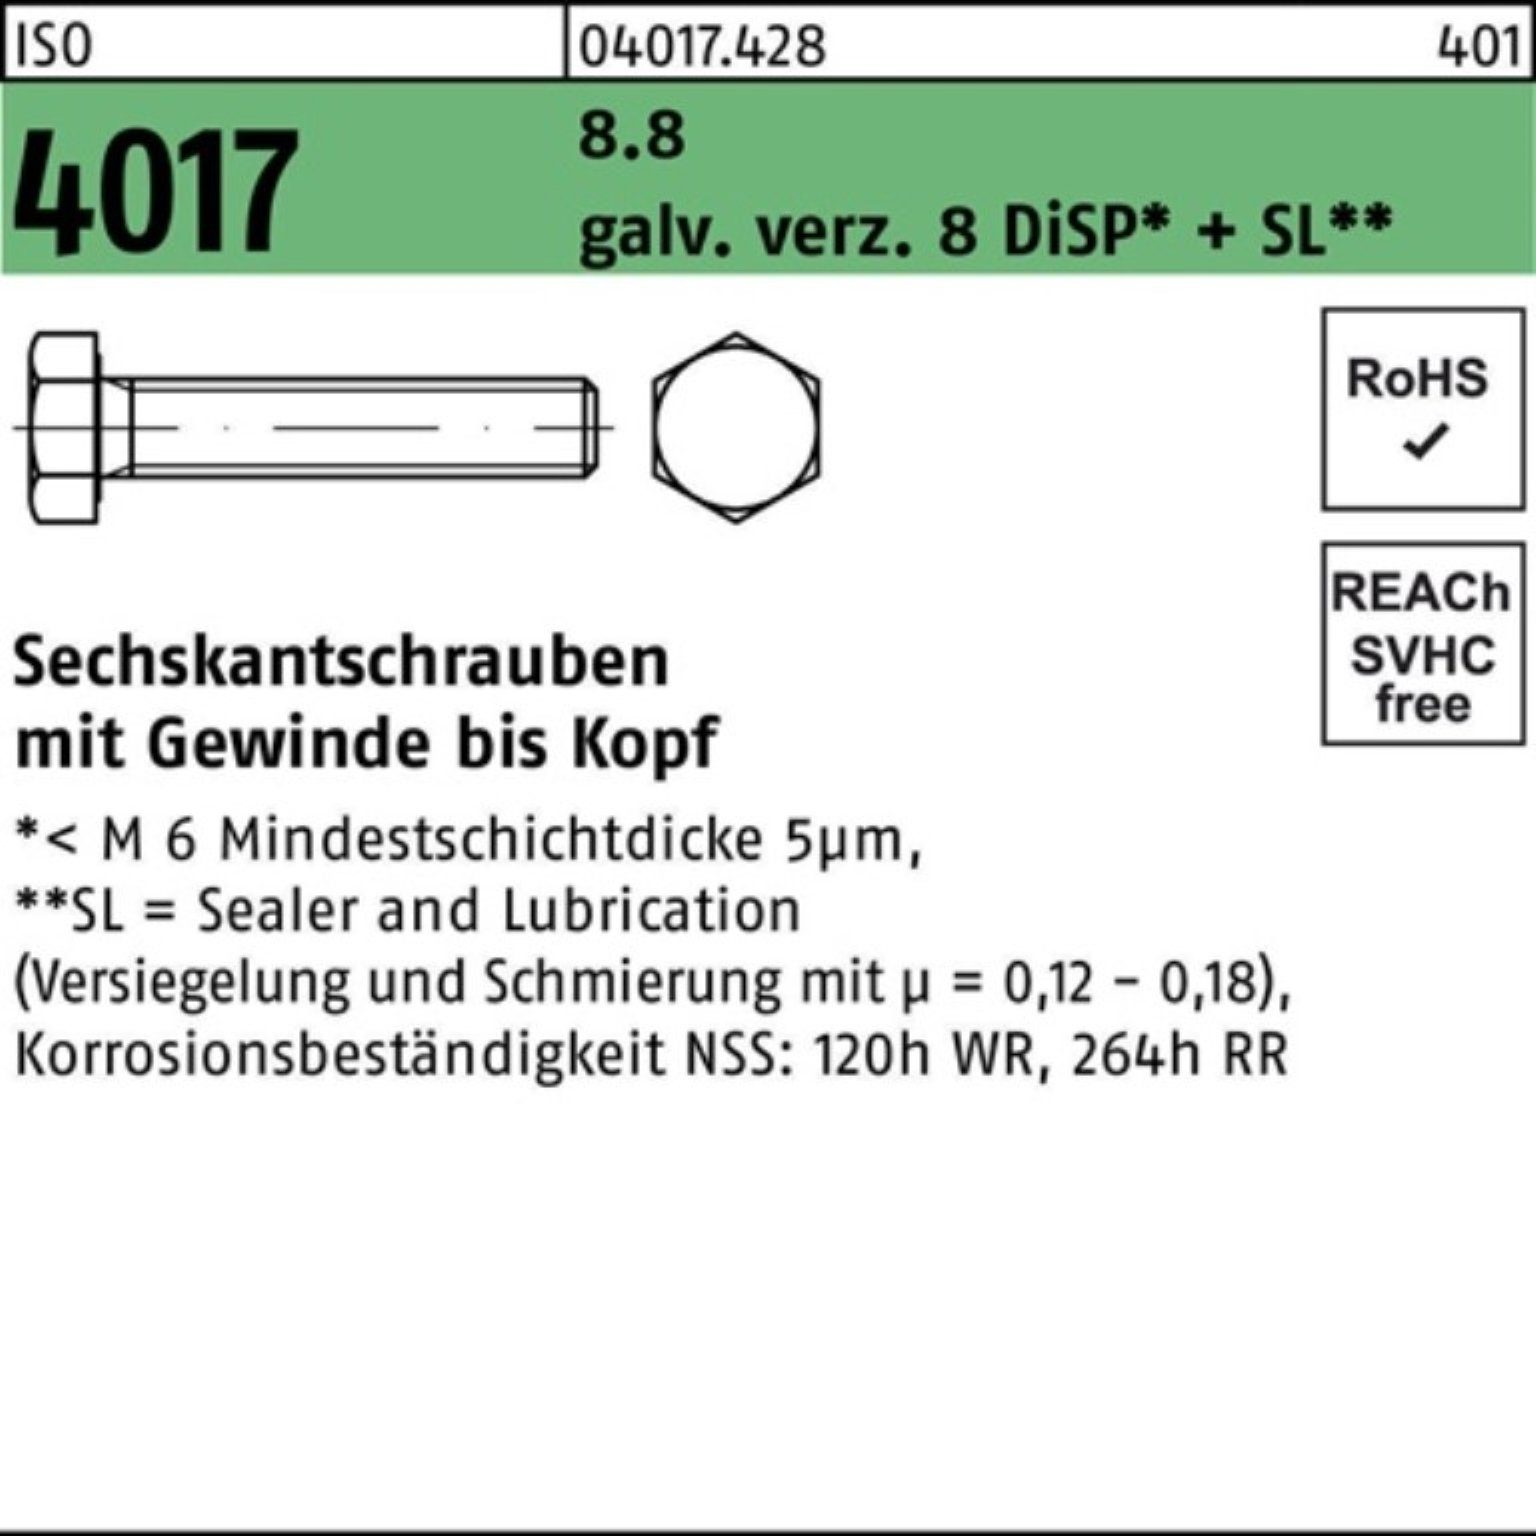 Bufab 500er 4017 M4x 8 ISO galv.verz. Sechskantschraube 8.8 DiSP+ Pack VG Sechskantschraube 12